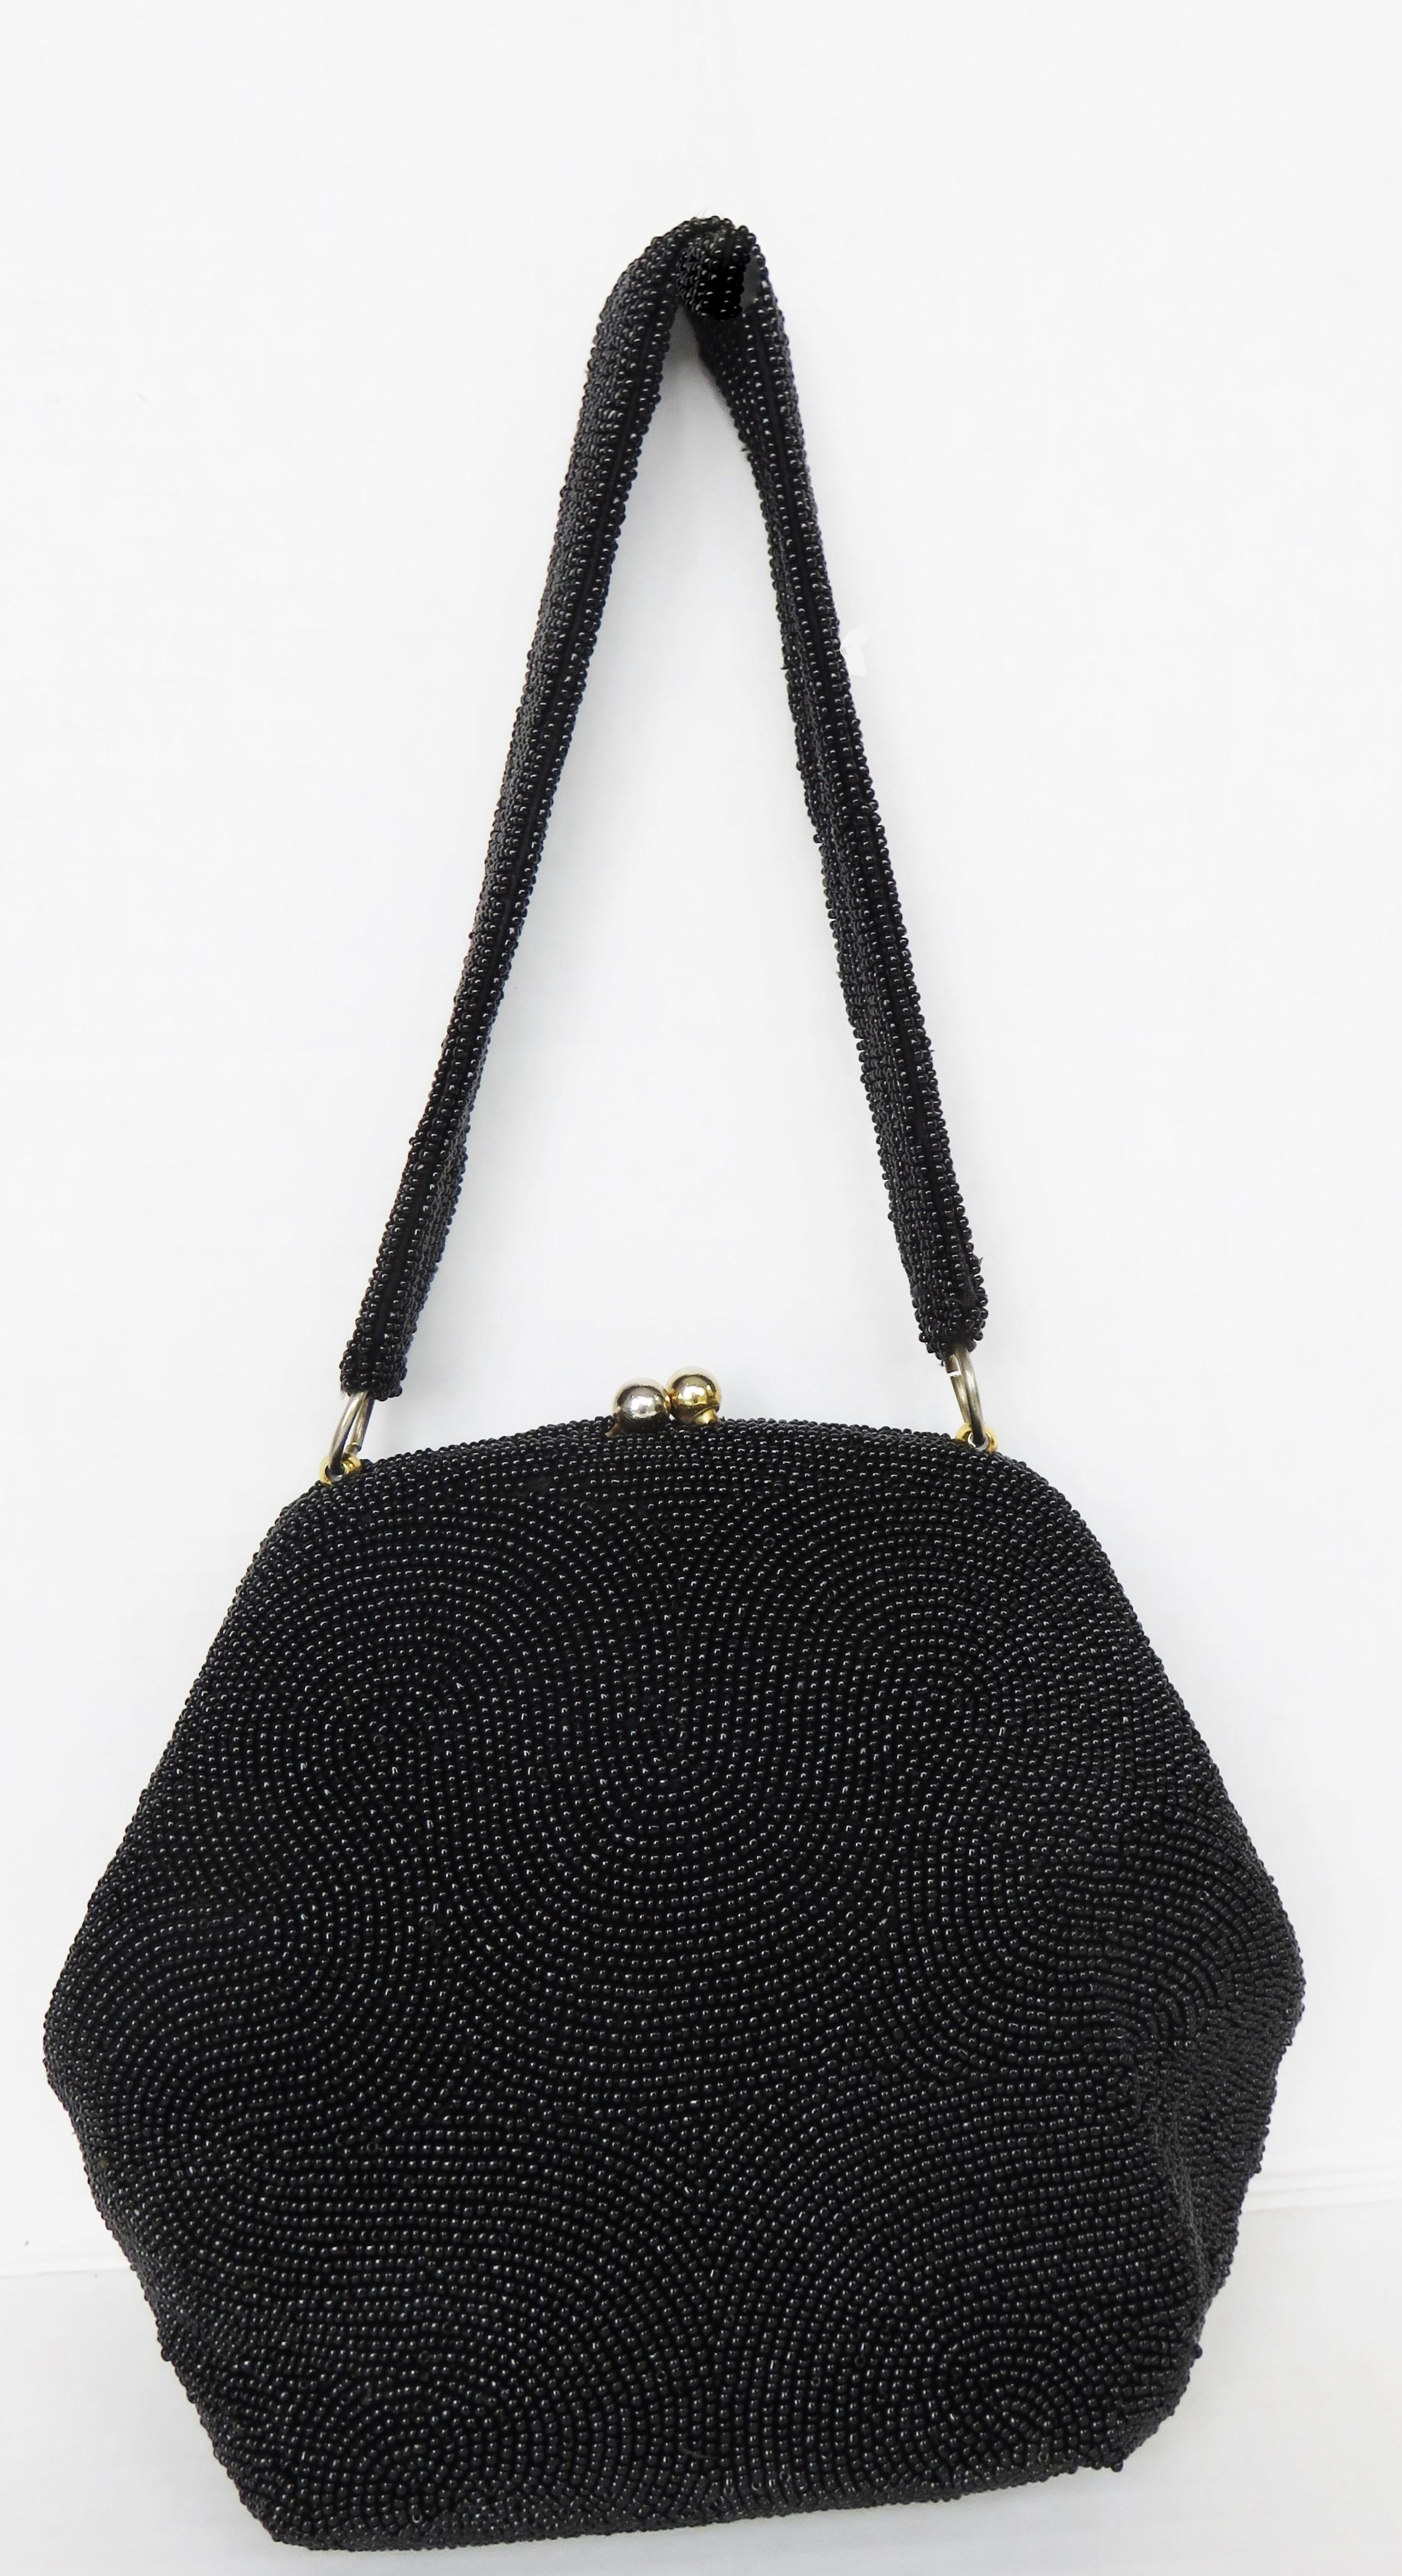 Un magnifique sac à main en verre noir avec des perles de rocaille dans un superbe motif de vagues par Josef.  Il est doté d'une poignée supérieure, d'une doublure en soie, d'une poche et d'un fermoir doré sur le dessus.

Hauteur  8